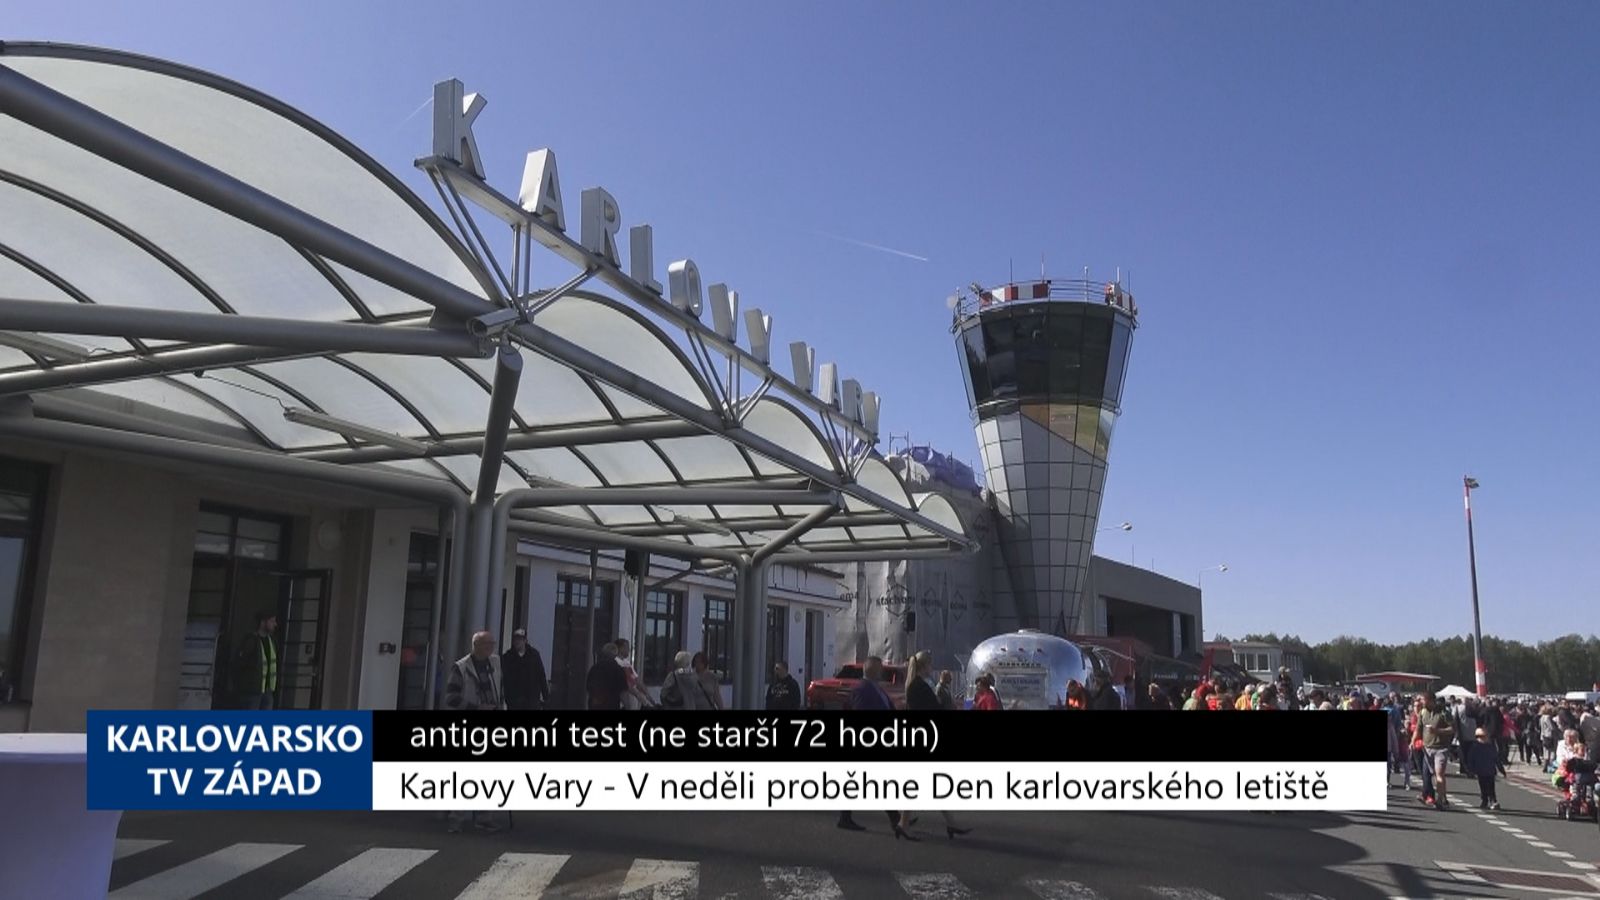 Karlovy Vary: V neděli proběhne Den karlovarského letiště (TV Západ)